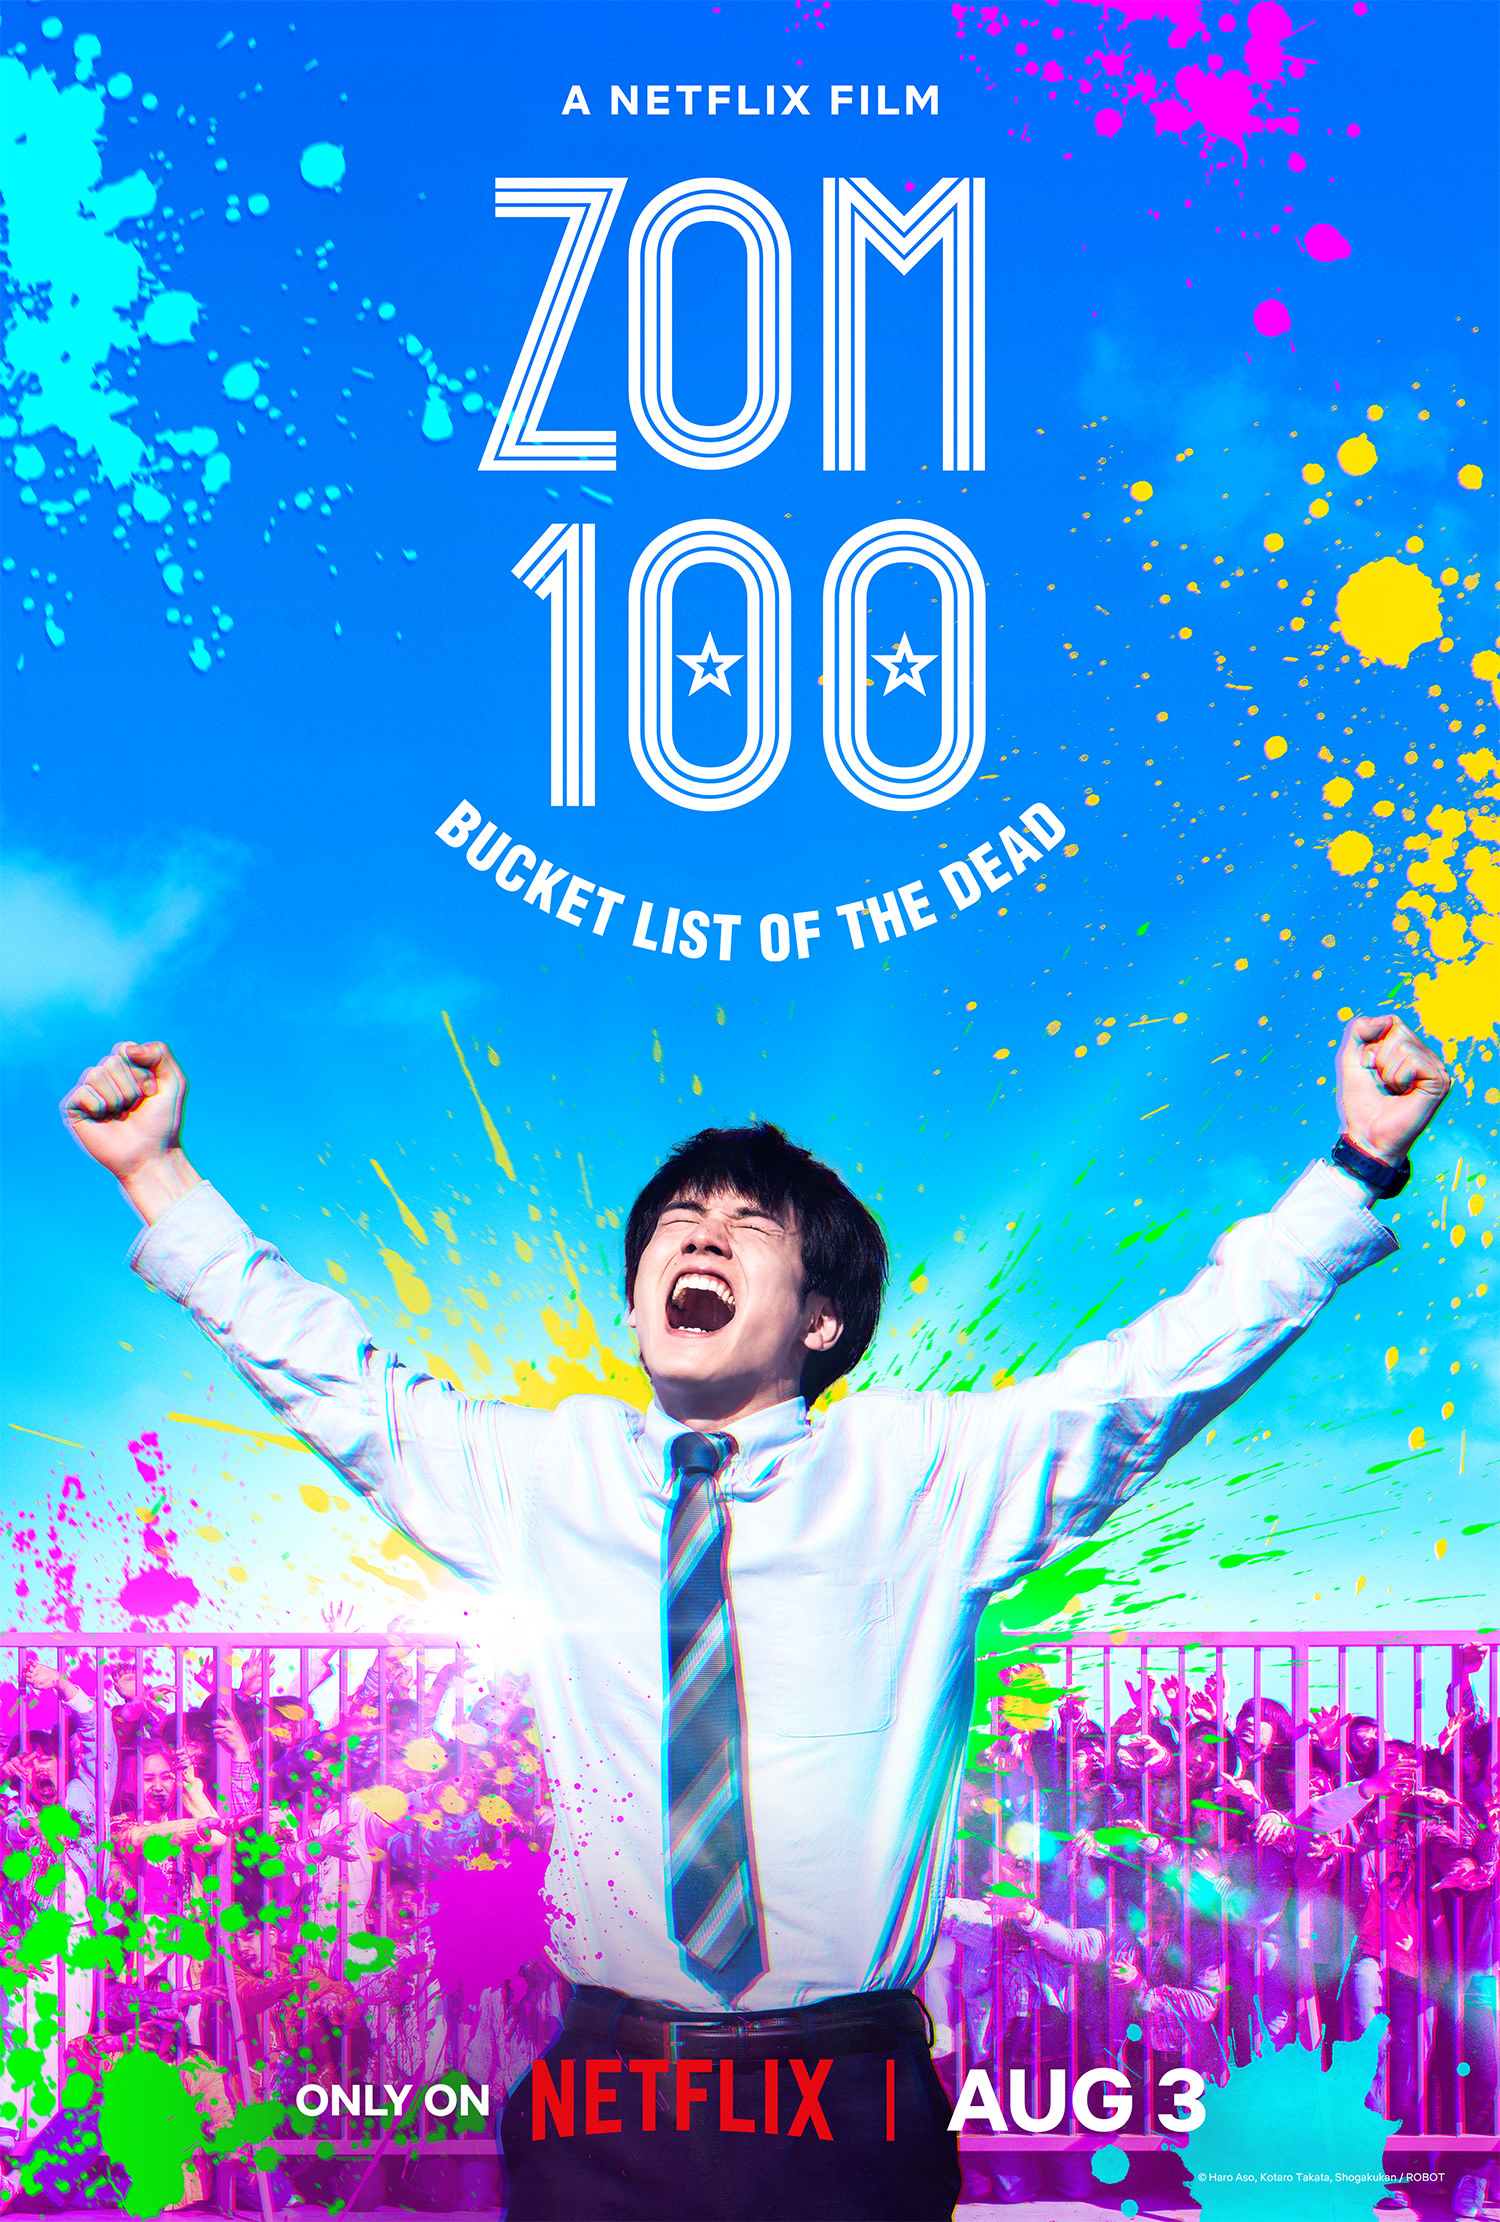 Poster Phim Zom 100: 100 điều cần làm trước khi trở thành thây ma (Zom 100: Bucket List of the Dead)